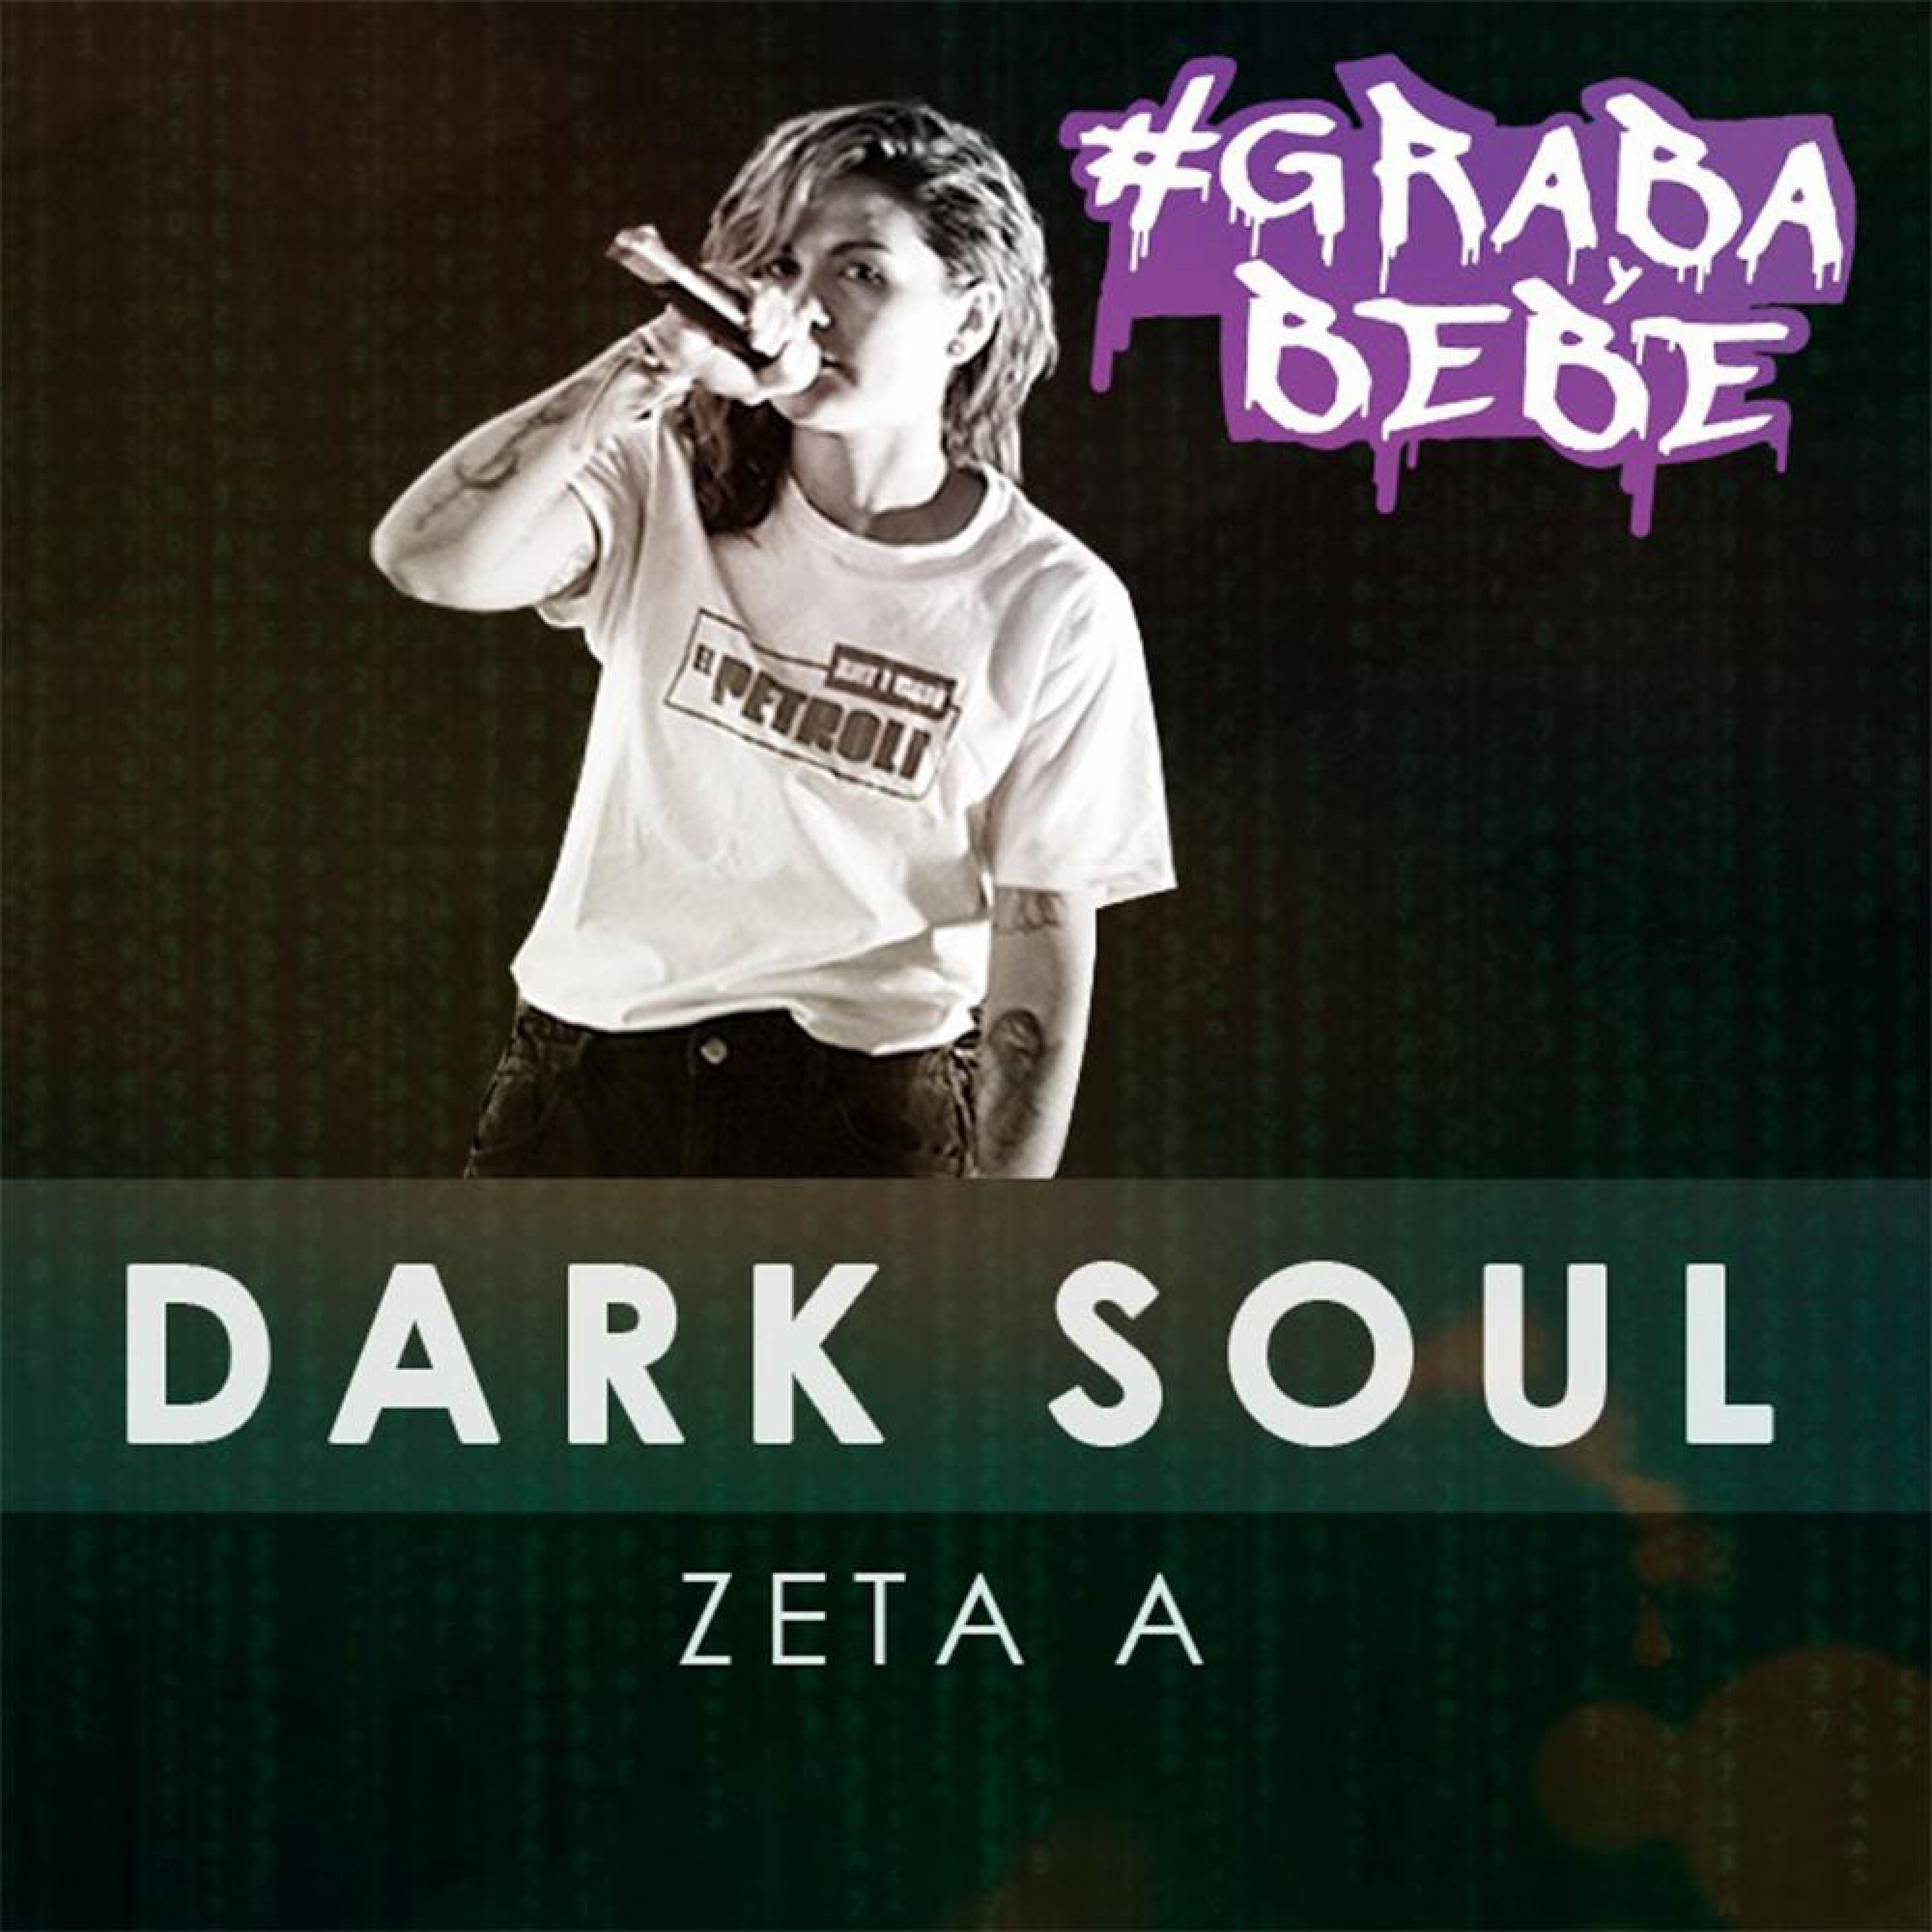 Zeta A - DARK SOUL (feat. GRABAYBEBE & ZoreBeats)